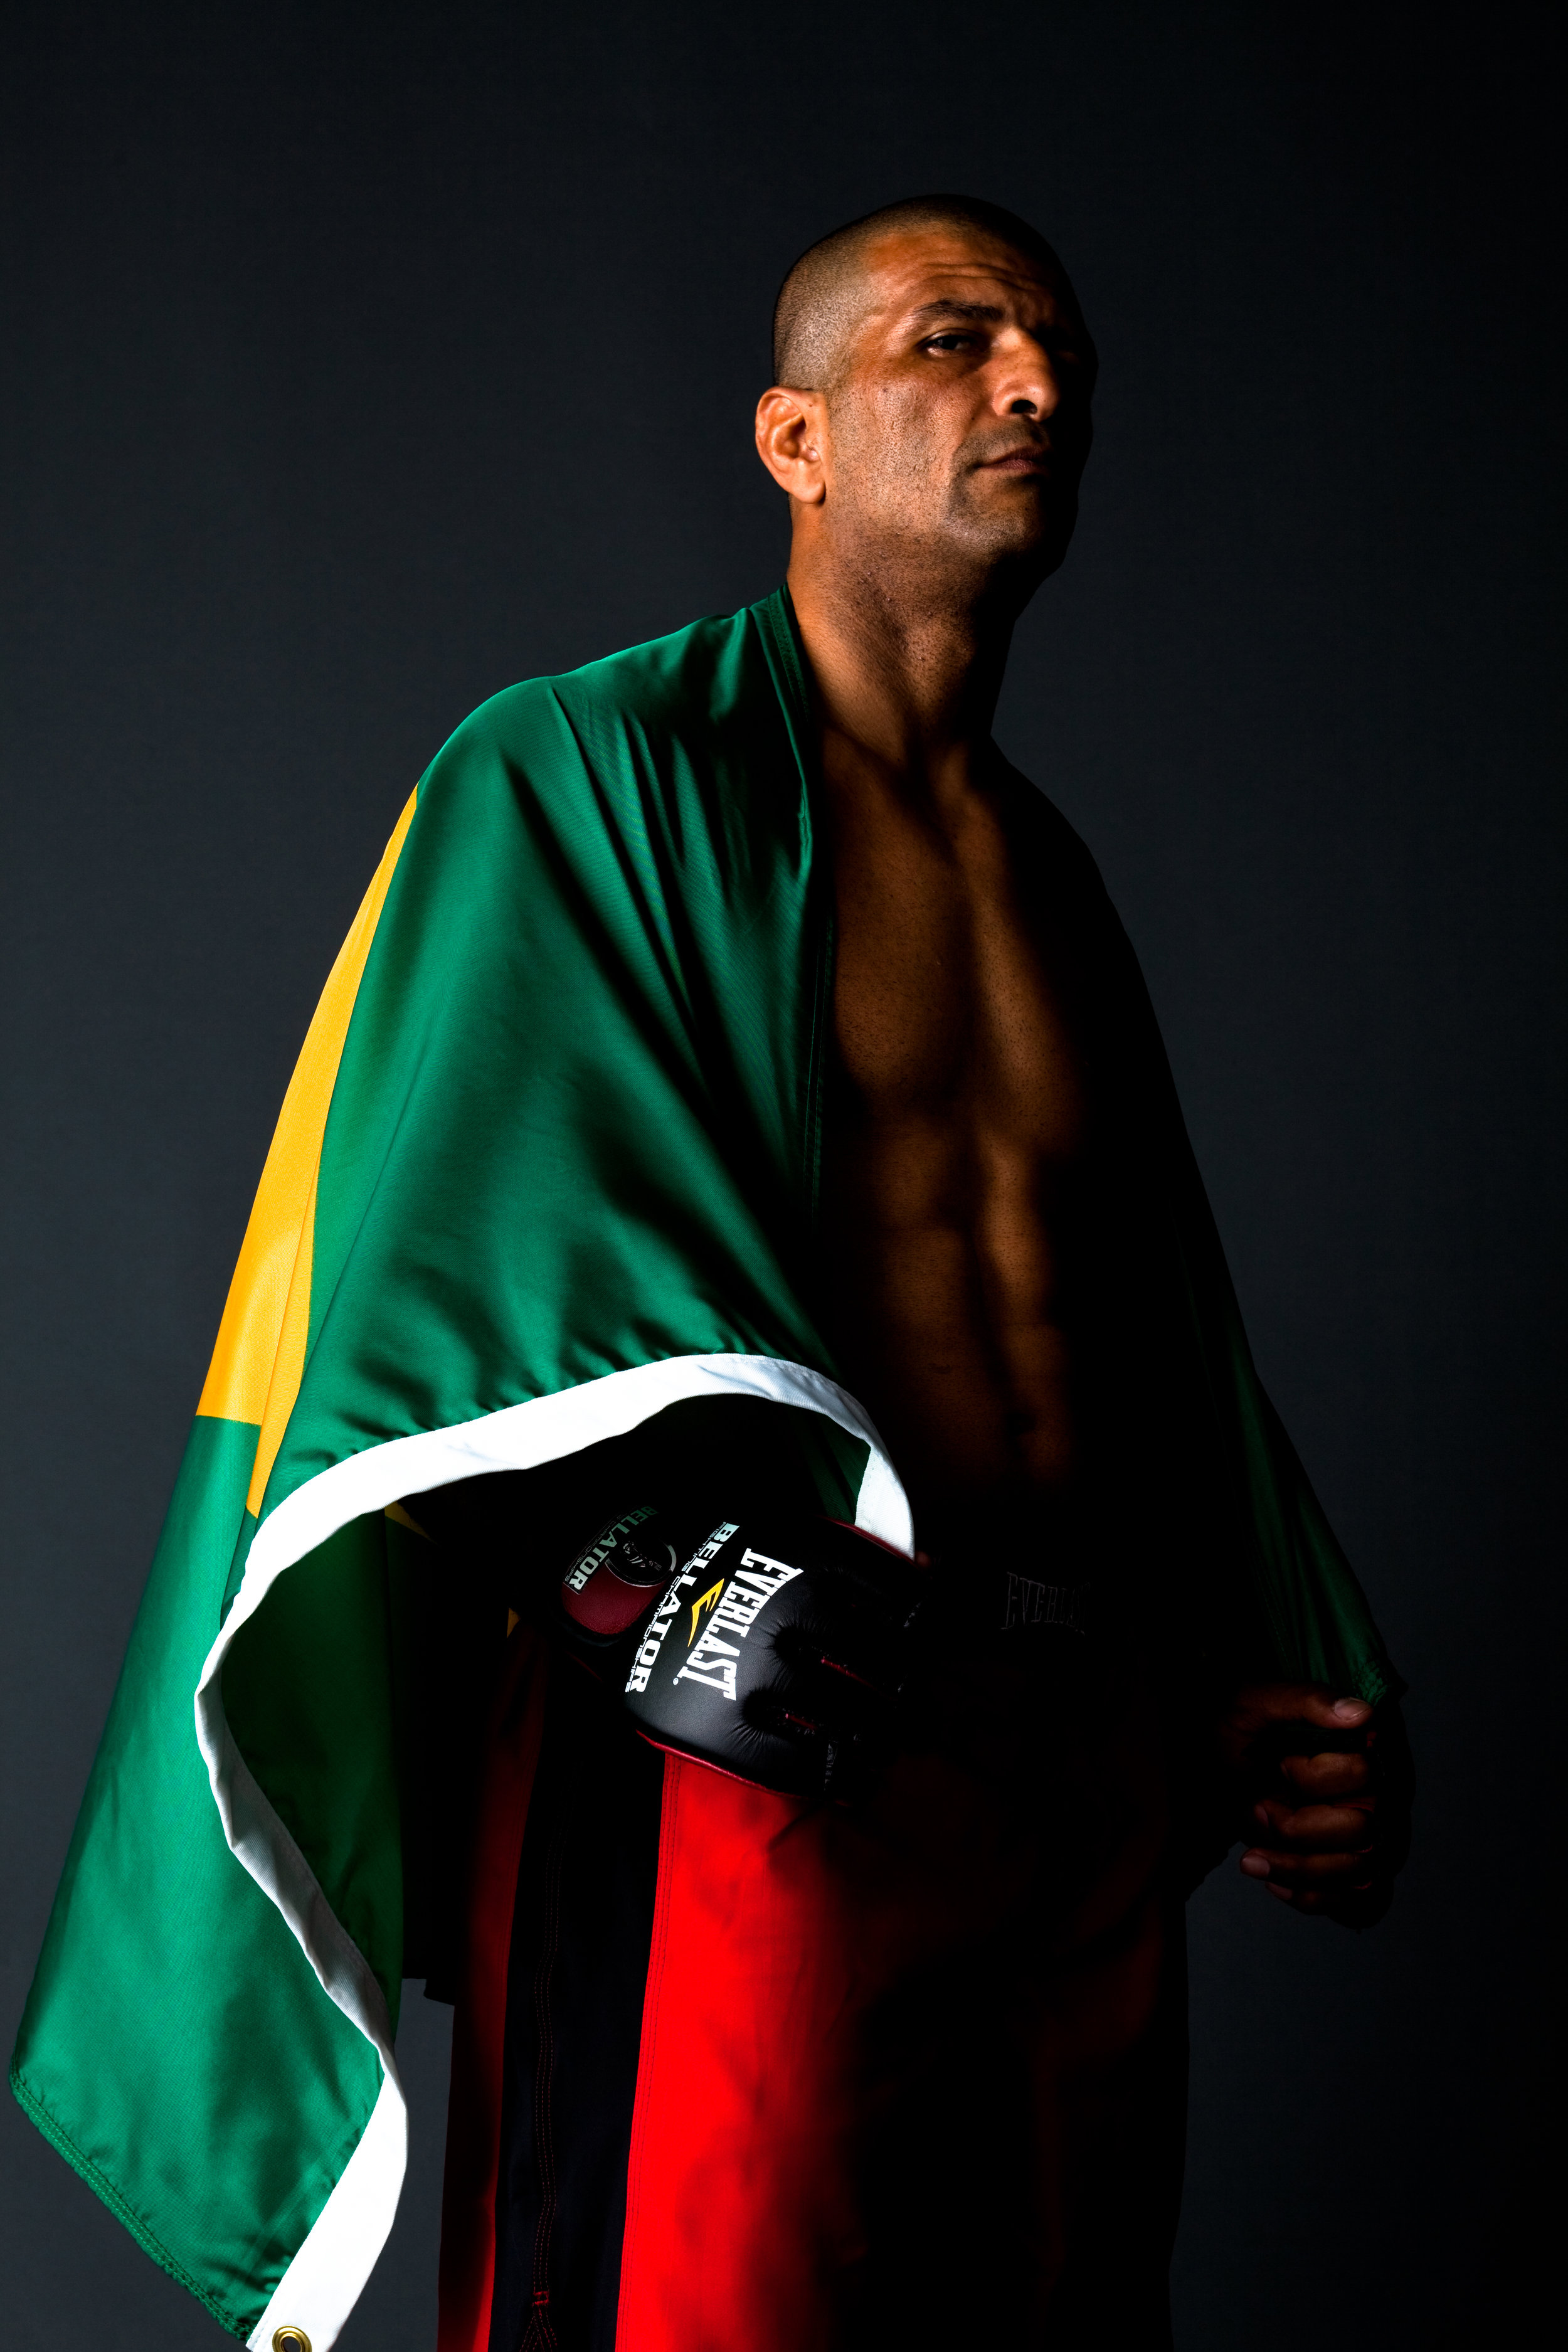 Bellator_GivaSantana brasilero boxer_2127-2.jpg